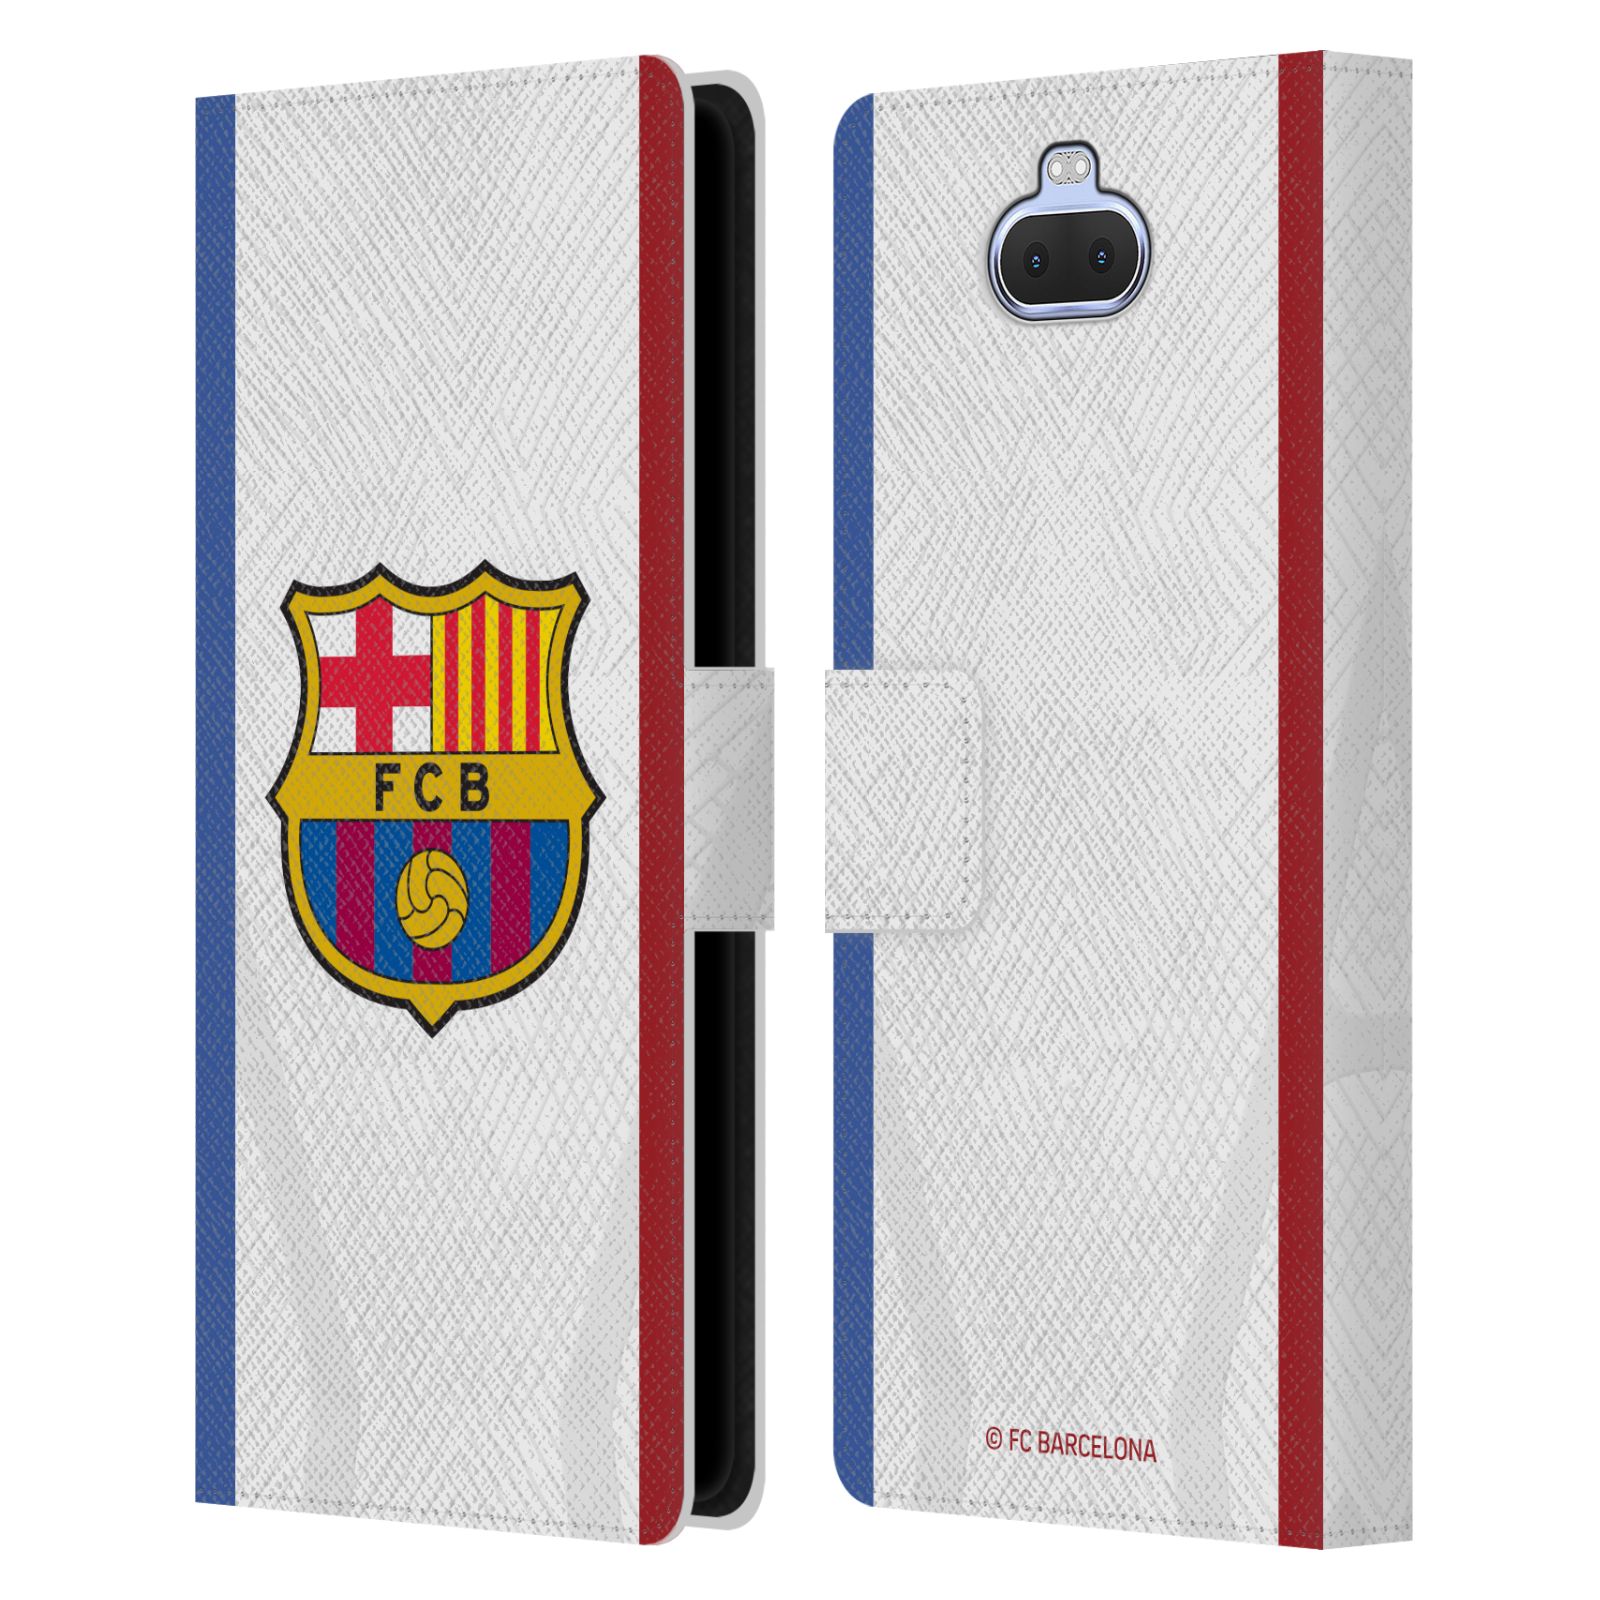 Pouzdro na mobil Sony Xperia 10 PLUS  - HEAD CASE - FC Barcelona - Dres hosté 23/24 2